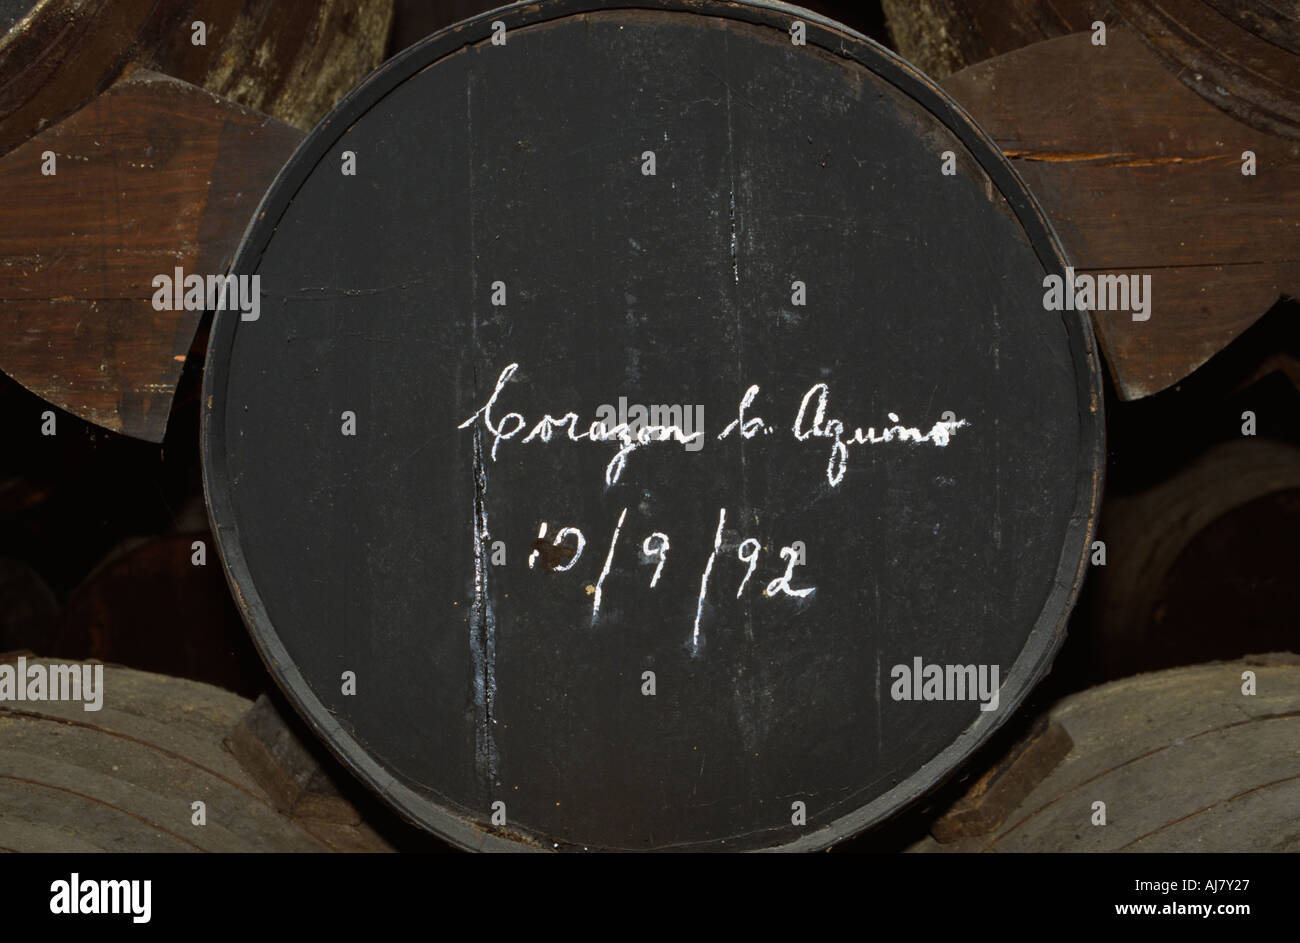 Barrel signed by Corazon Aquino in 1992, in the Gonzalez Byass bodega, Jerez de la Frontera, Andalucia, Spain Stock Photo